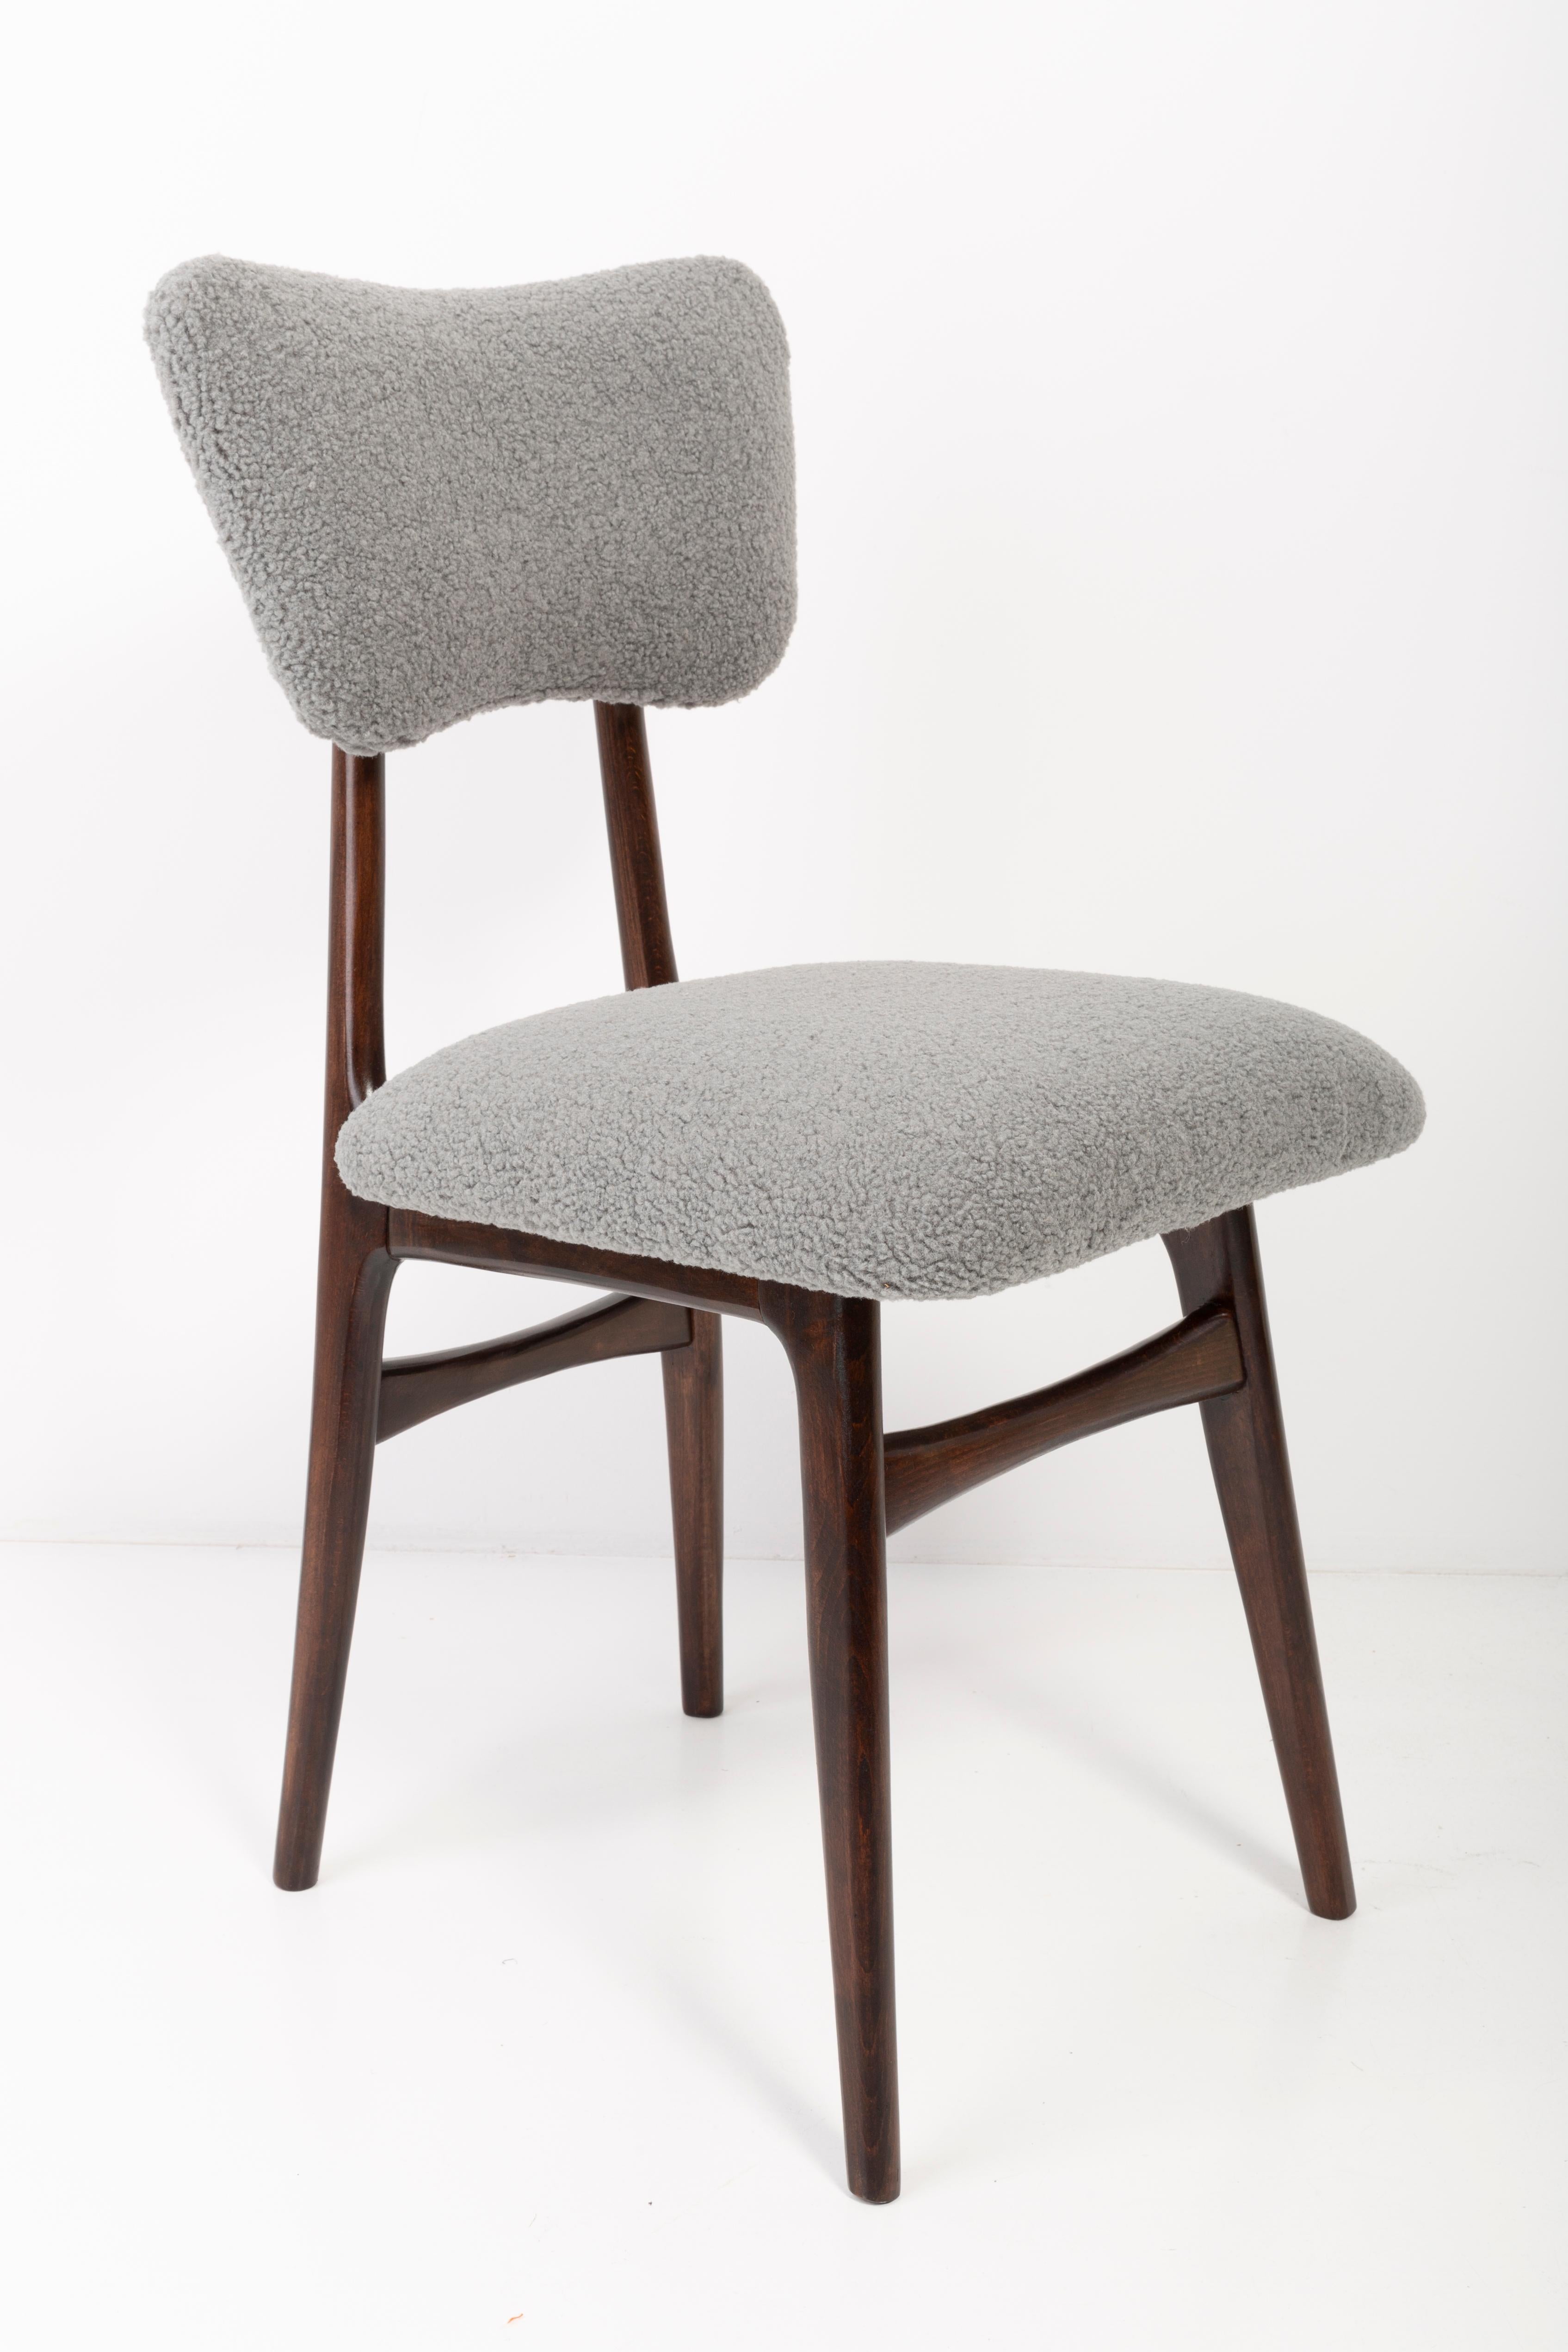 Stühle entworfen von Prof. Rajmund Halas. Hergestellt aus Buchenholz. Die Stühle wurden komplett neu gepolstert; die Holzarbeiten wurden aufgefrischt. Sitz und Rückenlehne sind mit grauem, strapazierfähigem und angenehm zu berührendem Bouclé-Stoff